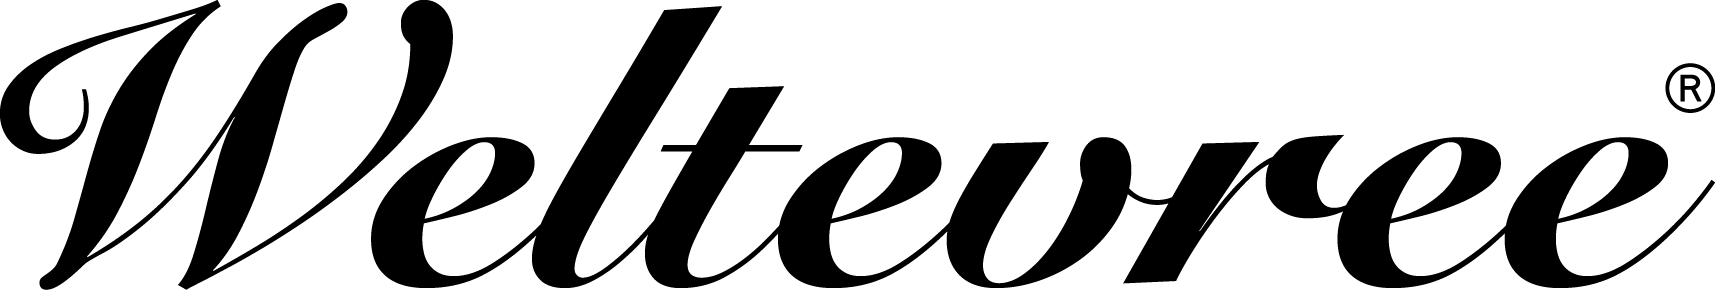 Logo Weltevree